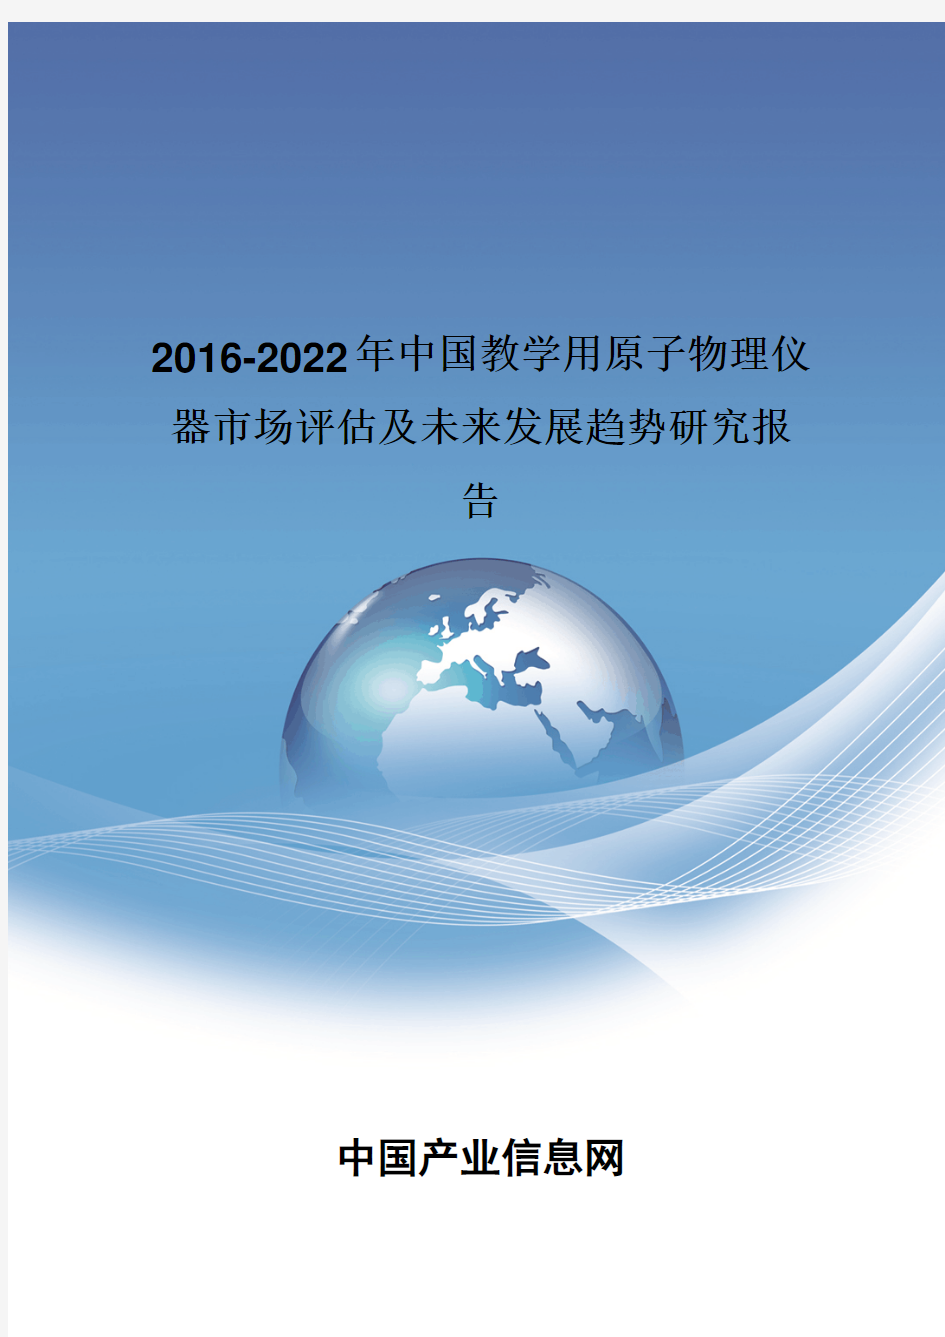 2016-2022年中国教学用原子物理仪器市场评估报告